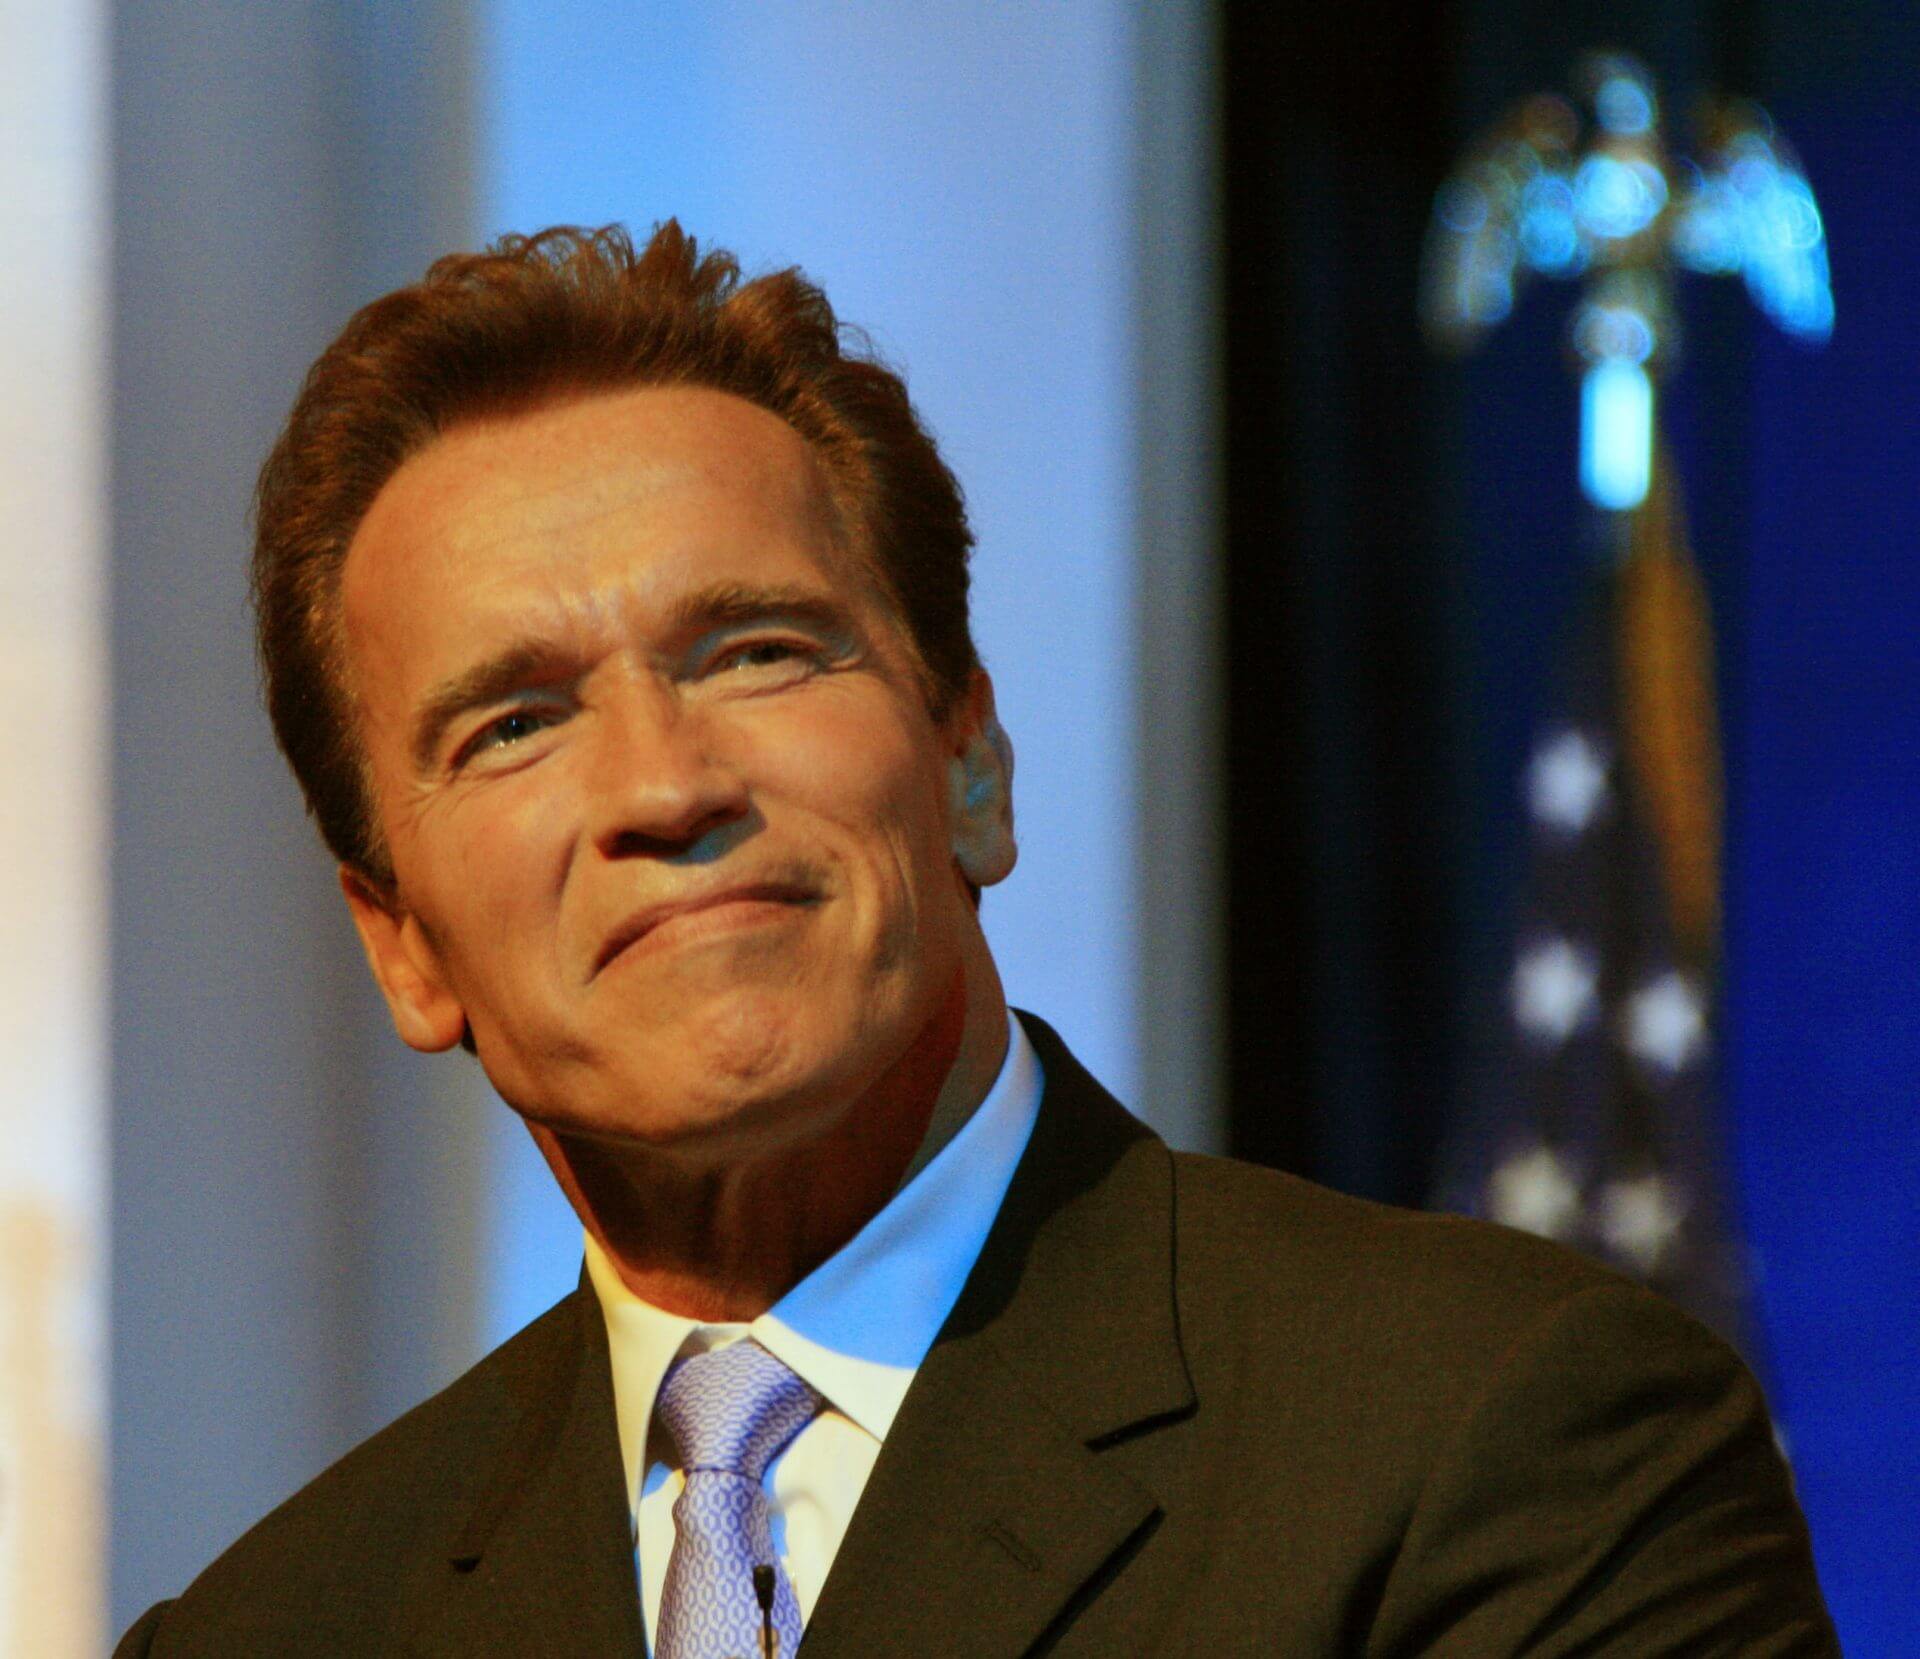 Arnold Schwarzenegger, Arnold Schwarzenegger in a suit